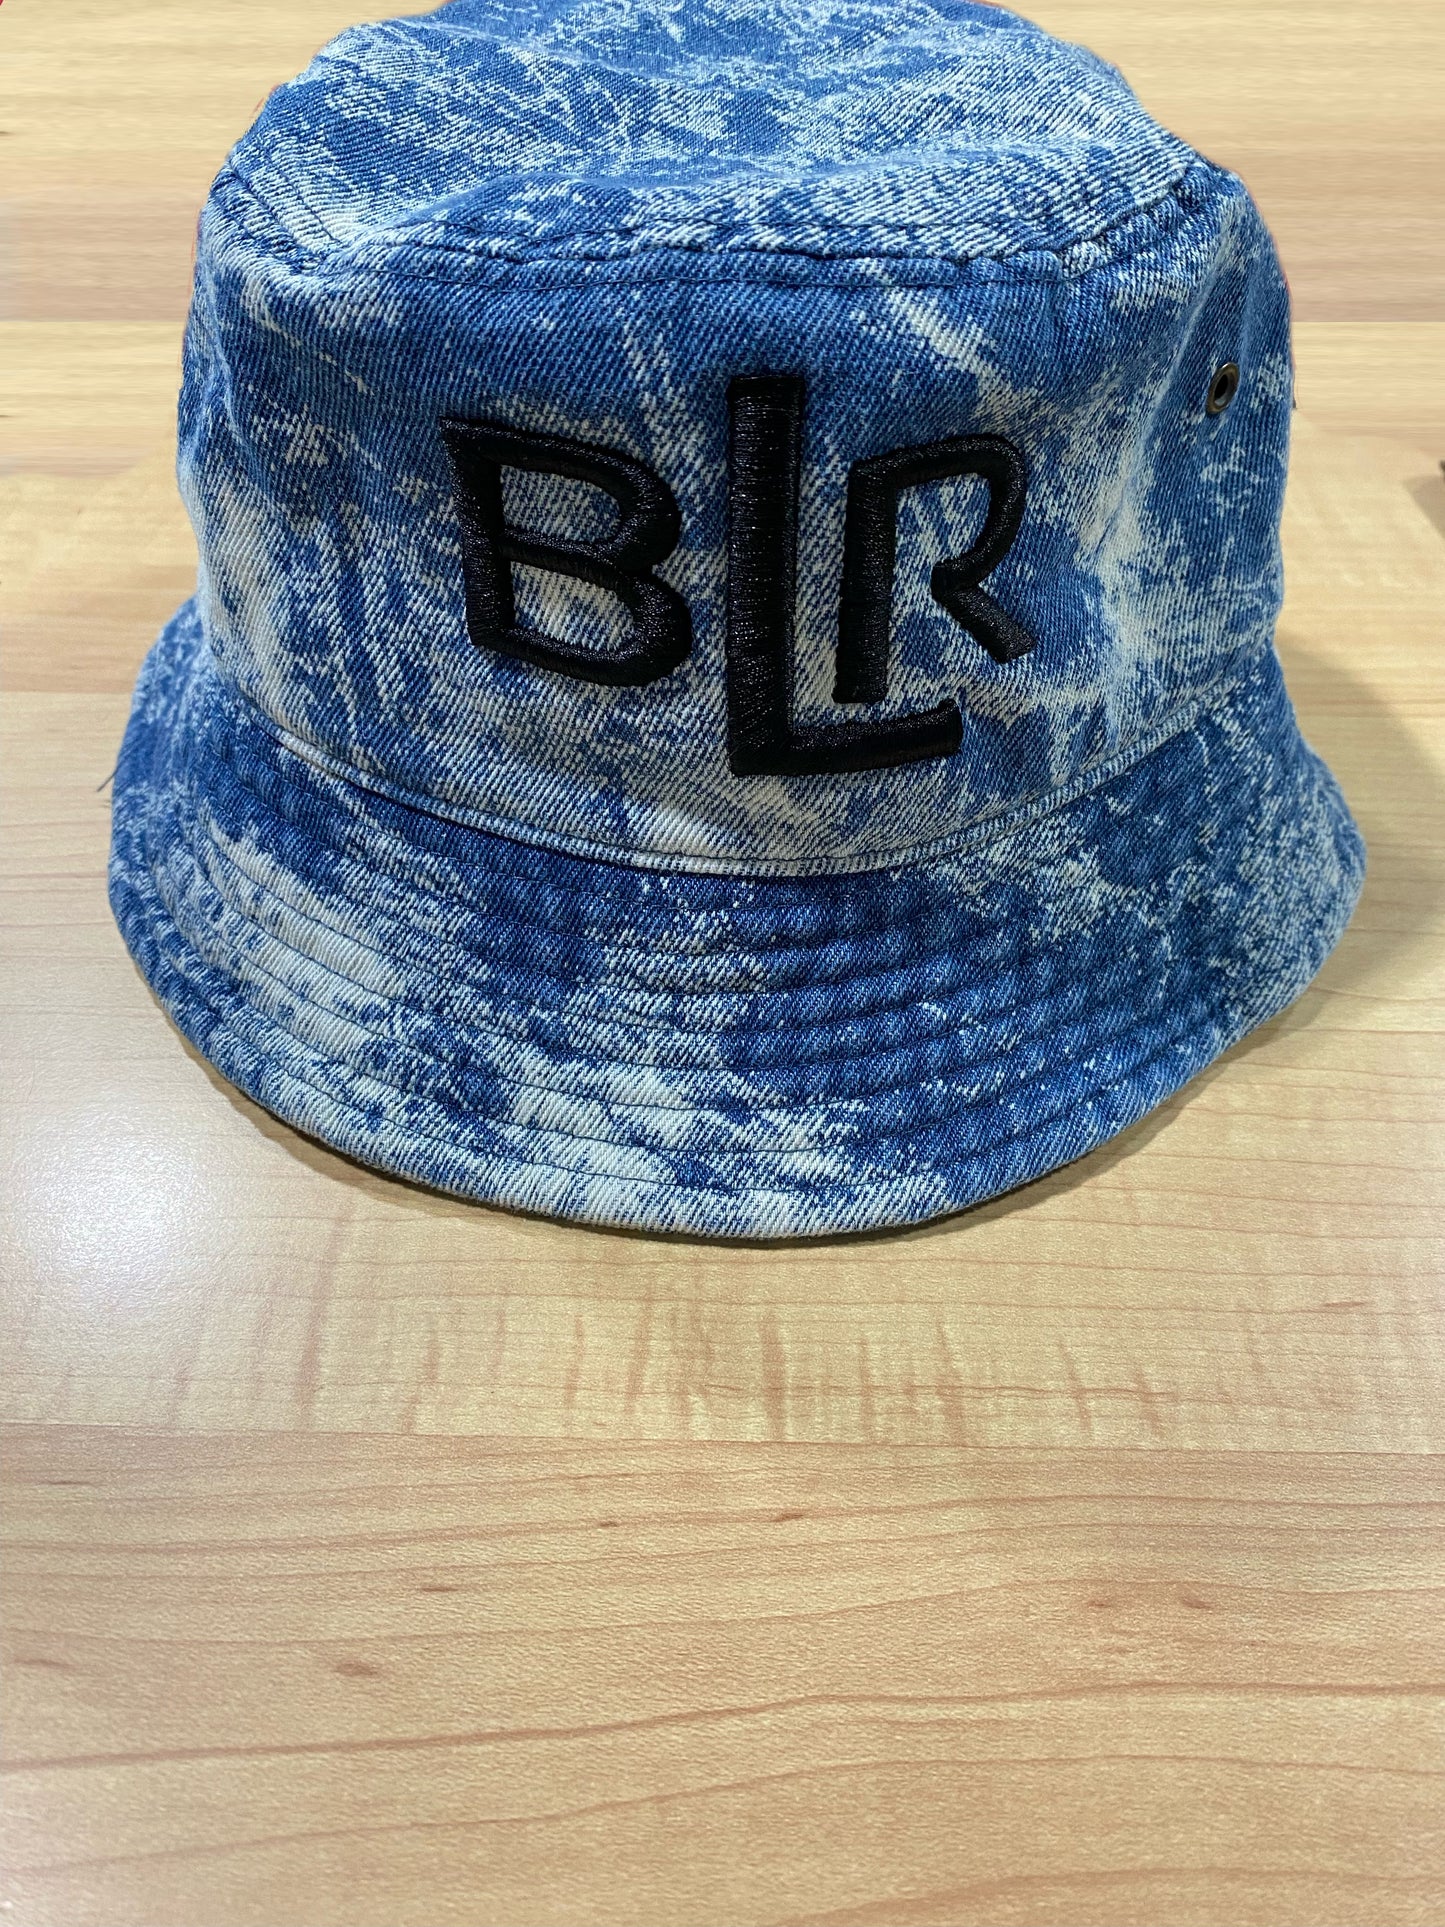 BLR Bucket Hat